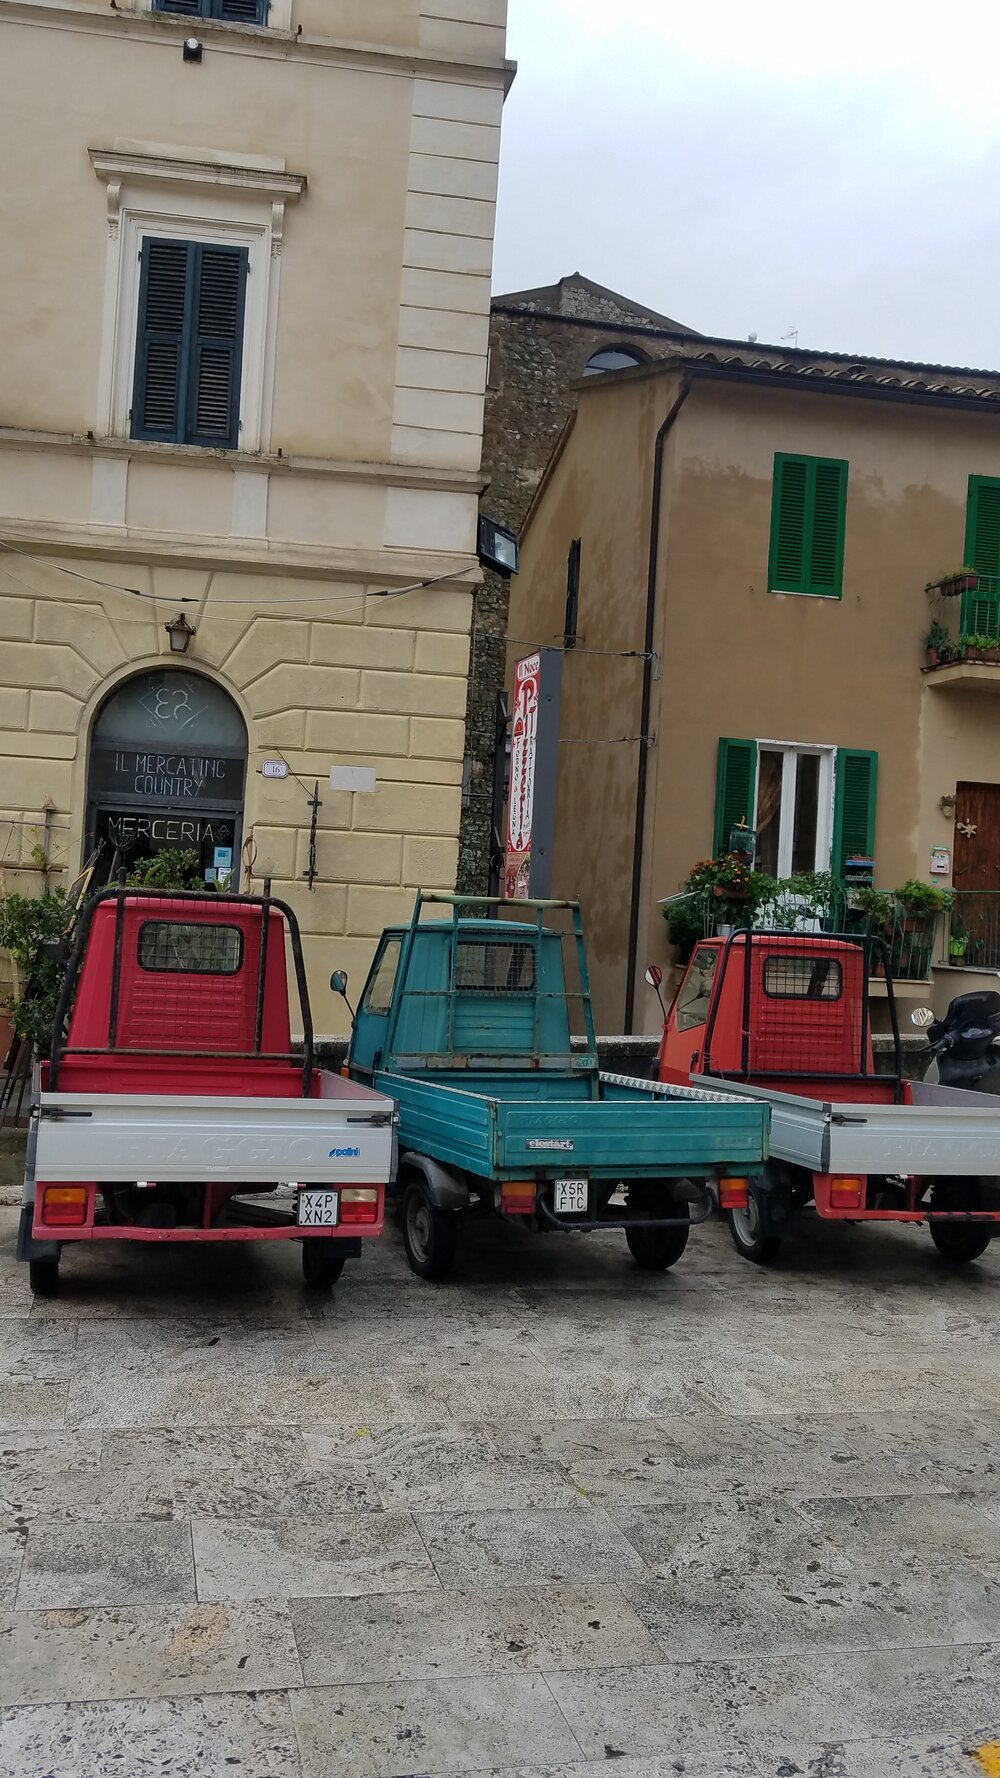 3 Piaggio Ape trucks in P. Garibaldi